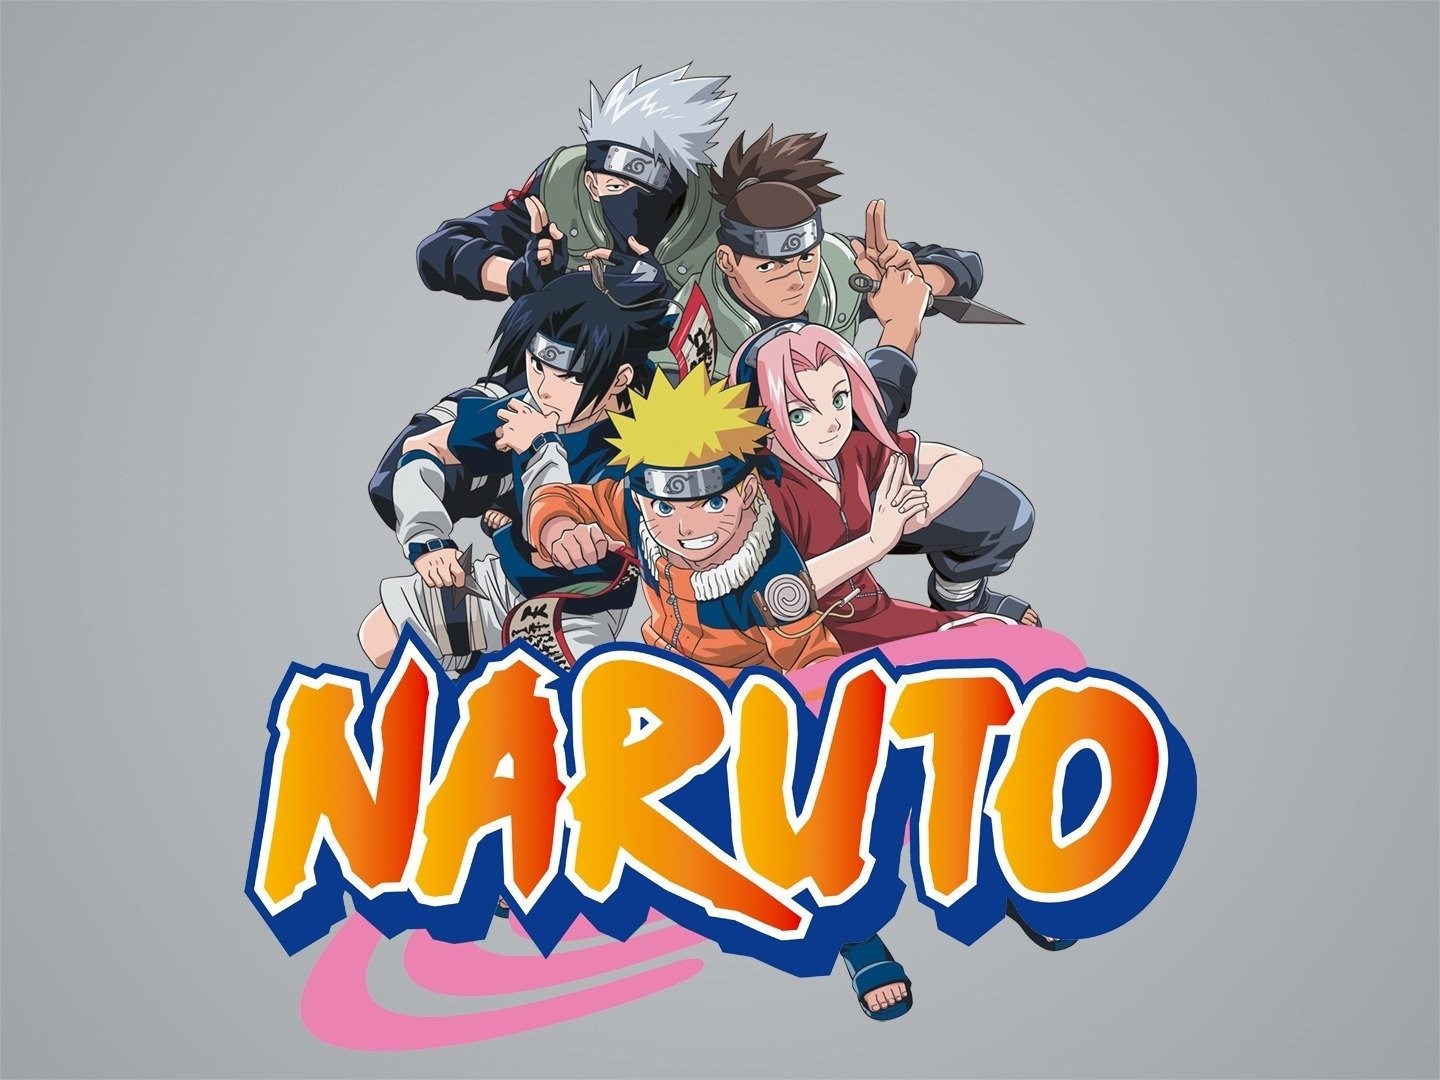 Naruto Shippuuden – FULL HD Todos os Episódios - Anime HD - Animes Online  Gratis!